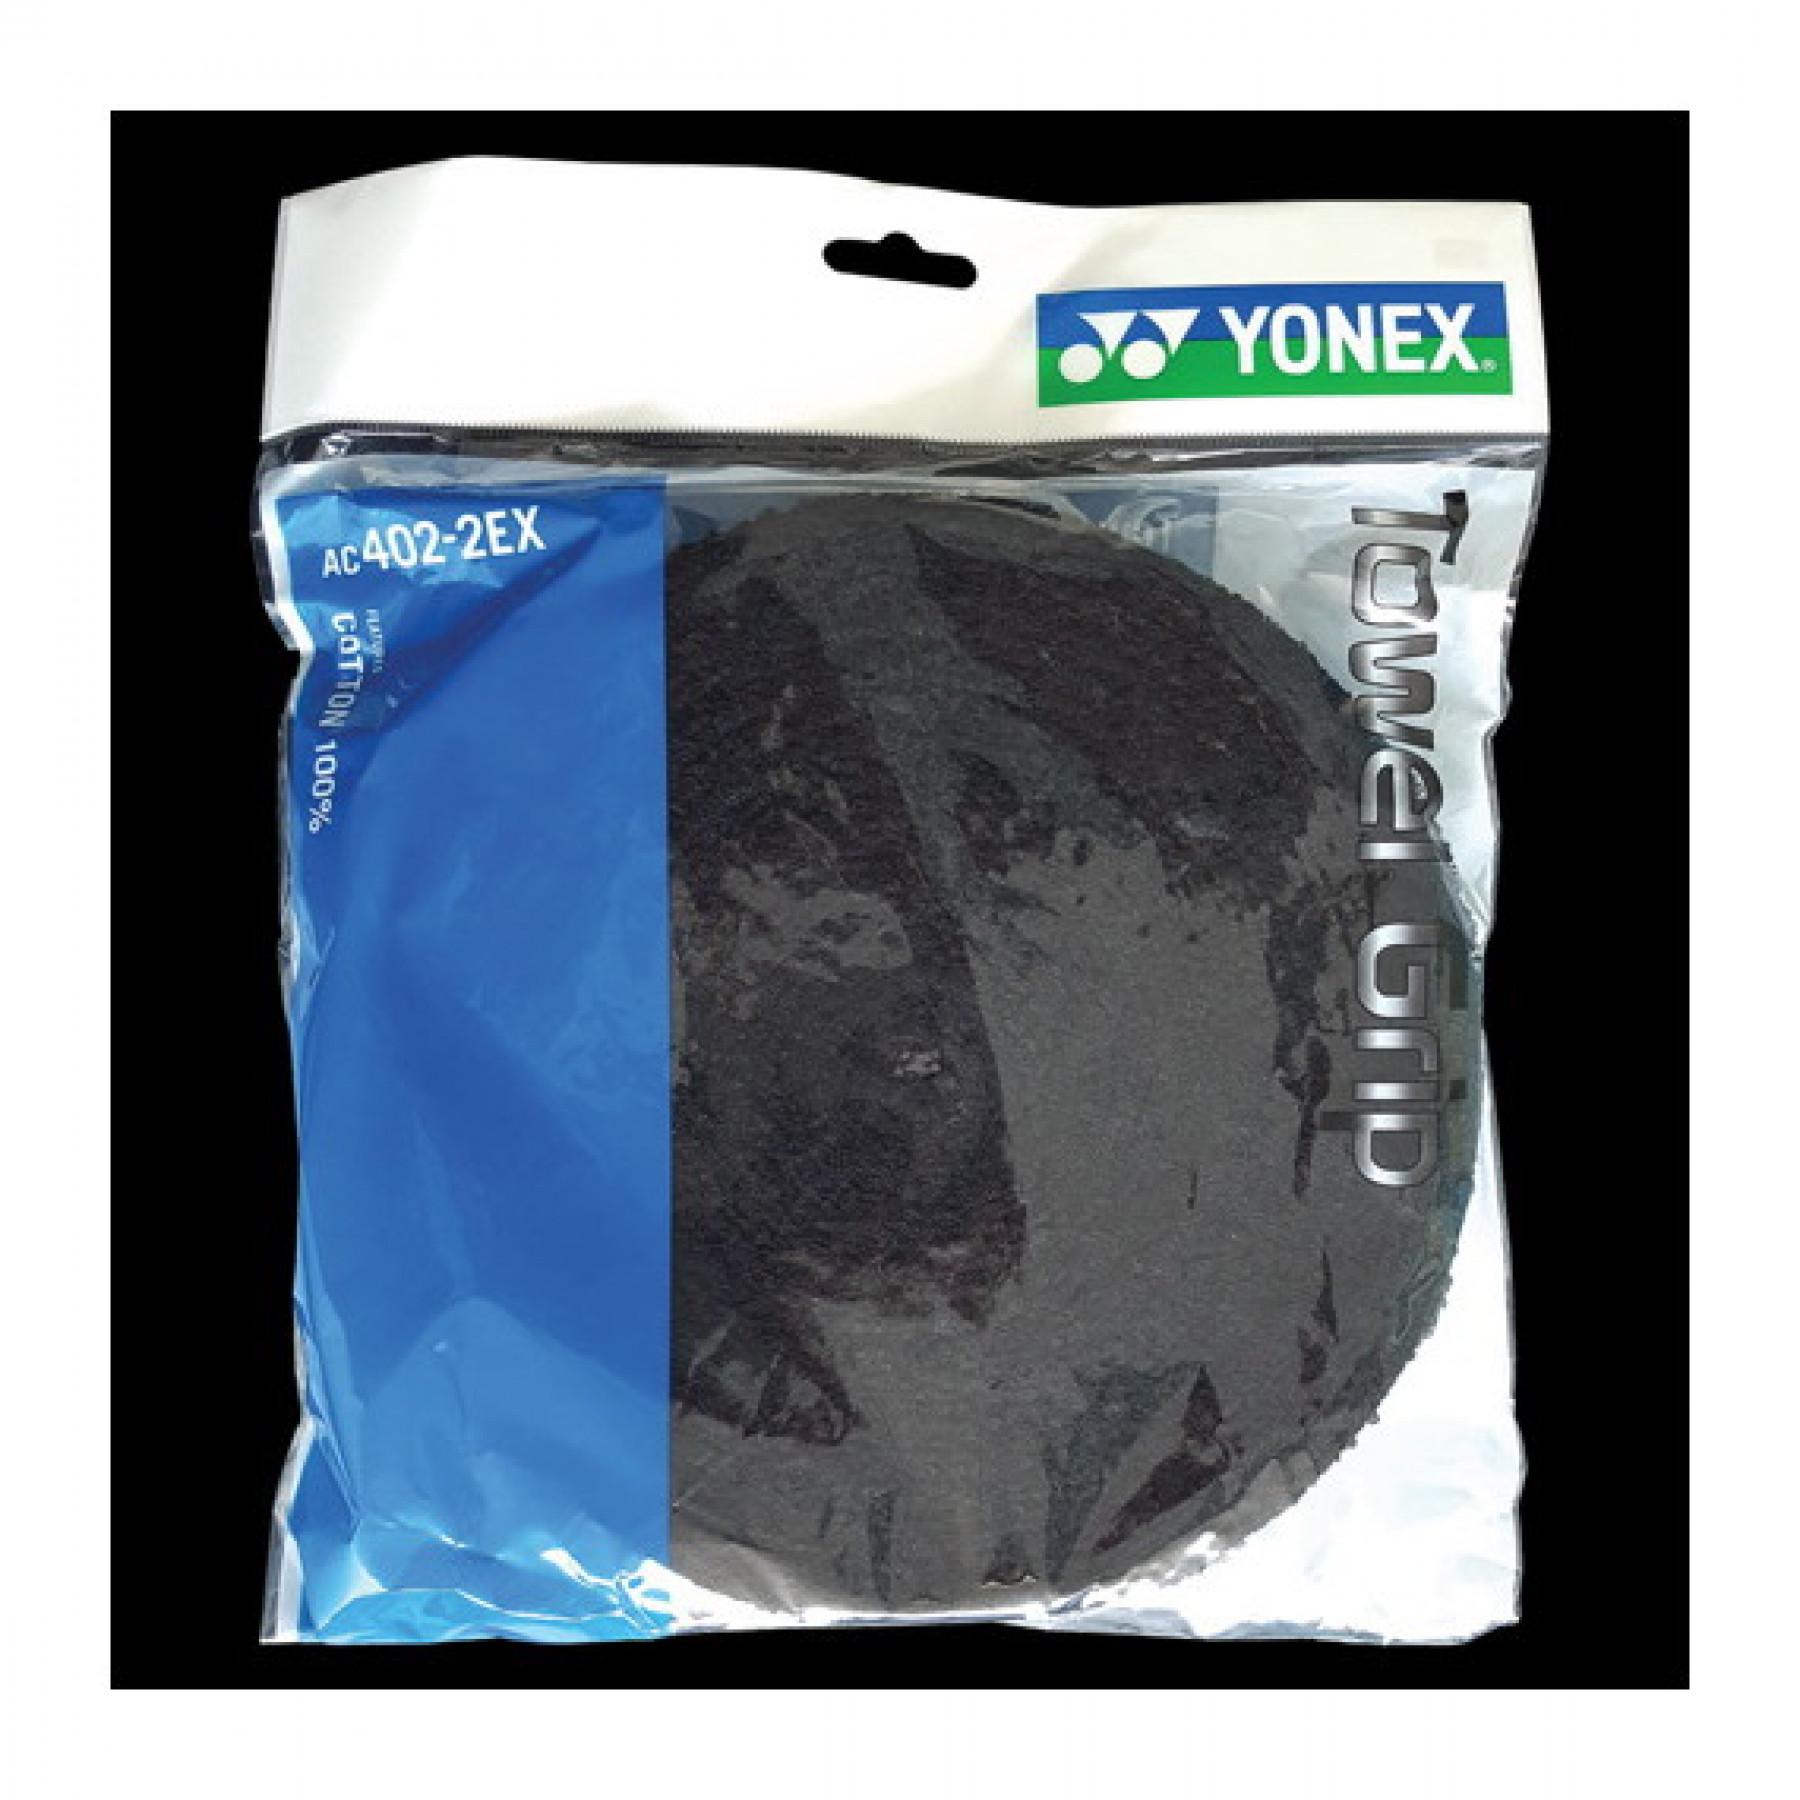 Schwammgriffrolle Yonex AC402-2EX